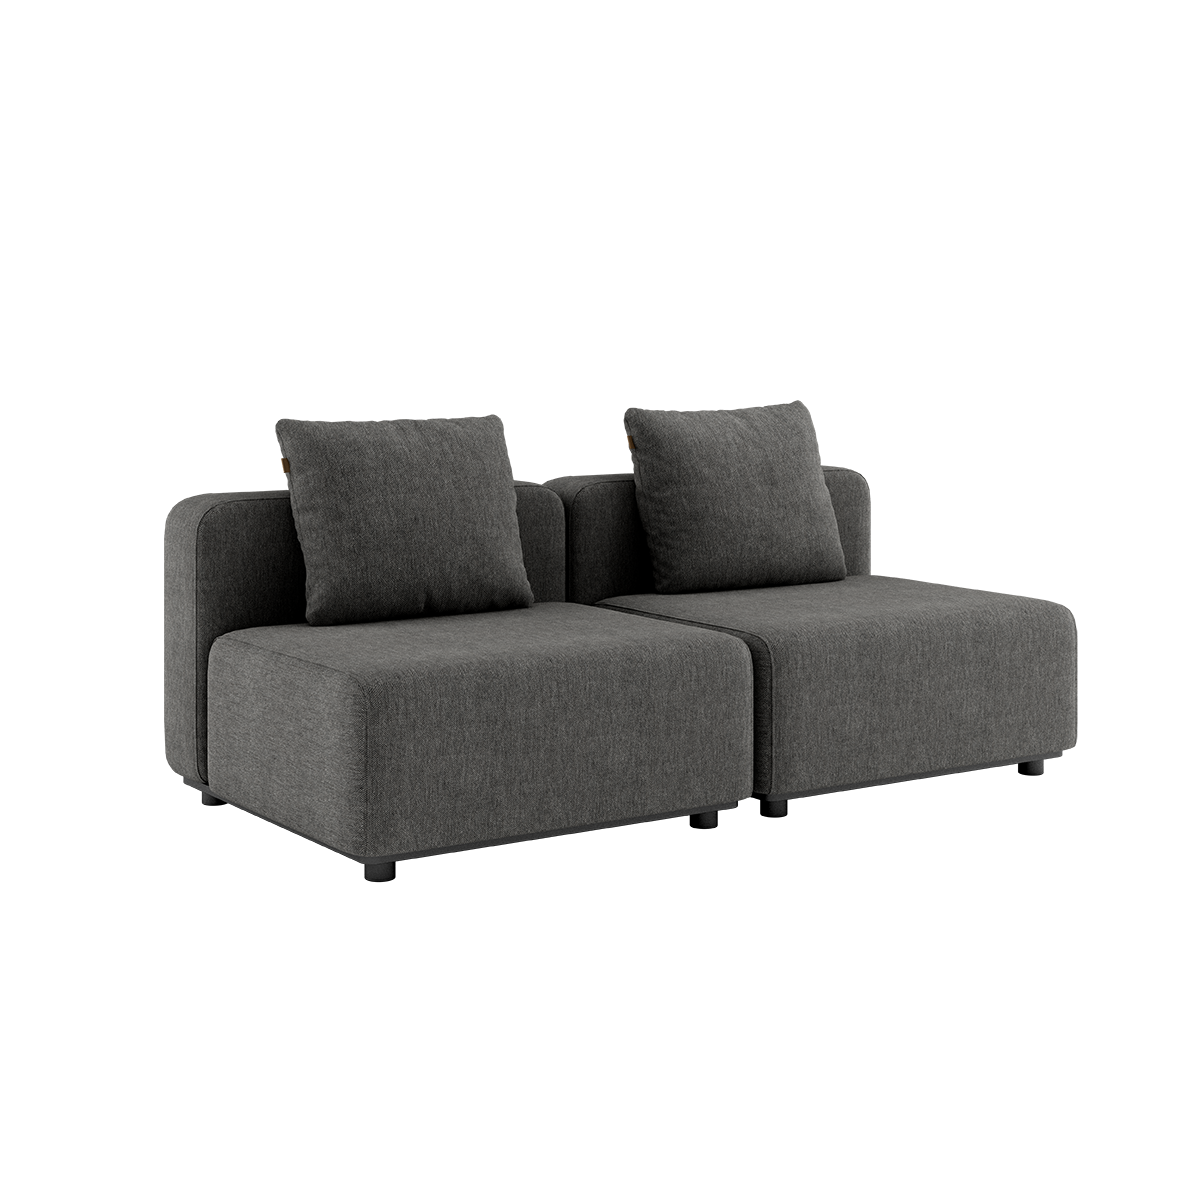  | Modulopbygget lounge udendørs sofa med puder fra SACKit mørkegrå til terrassen